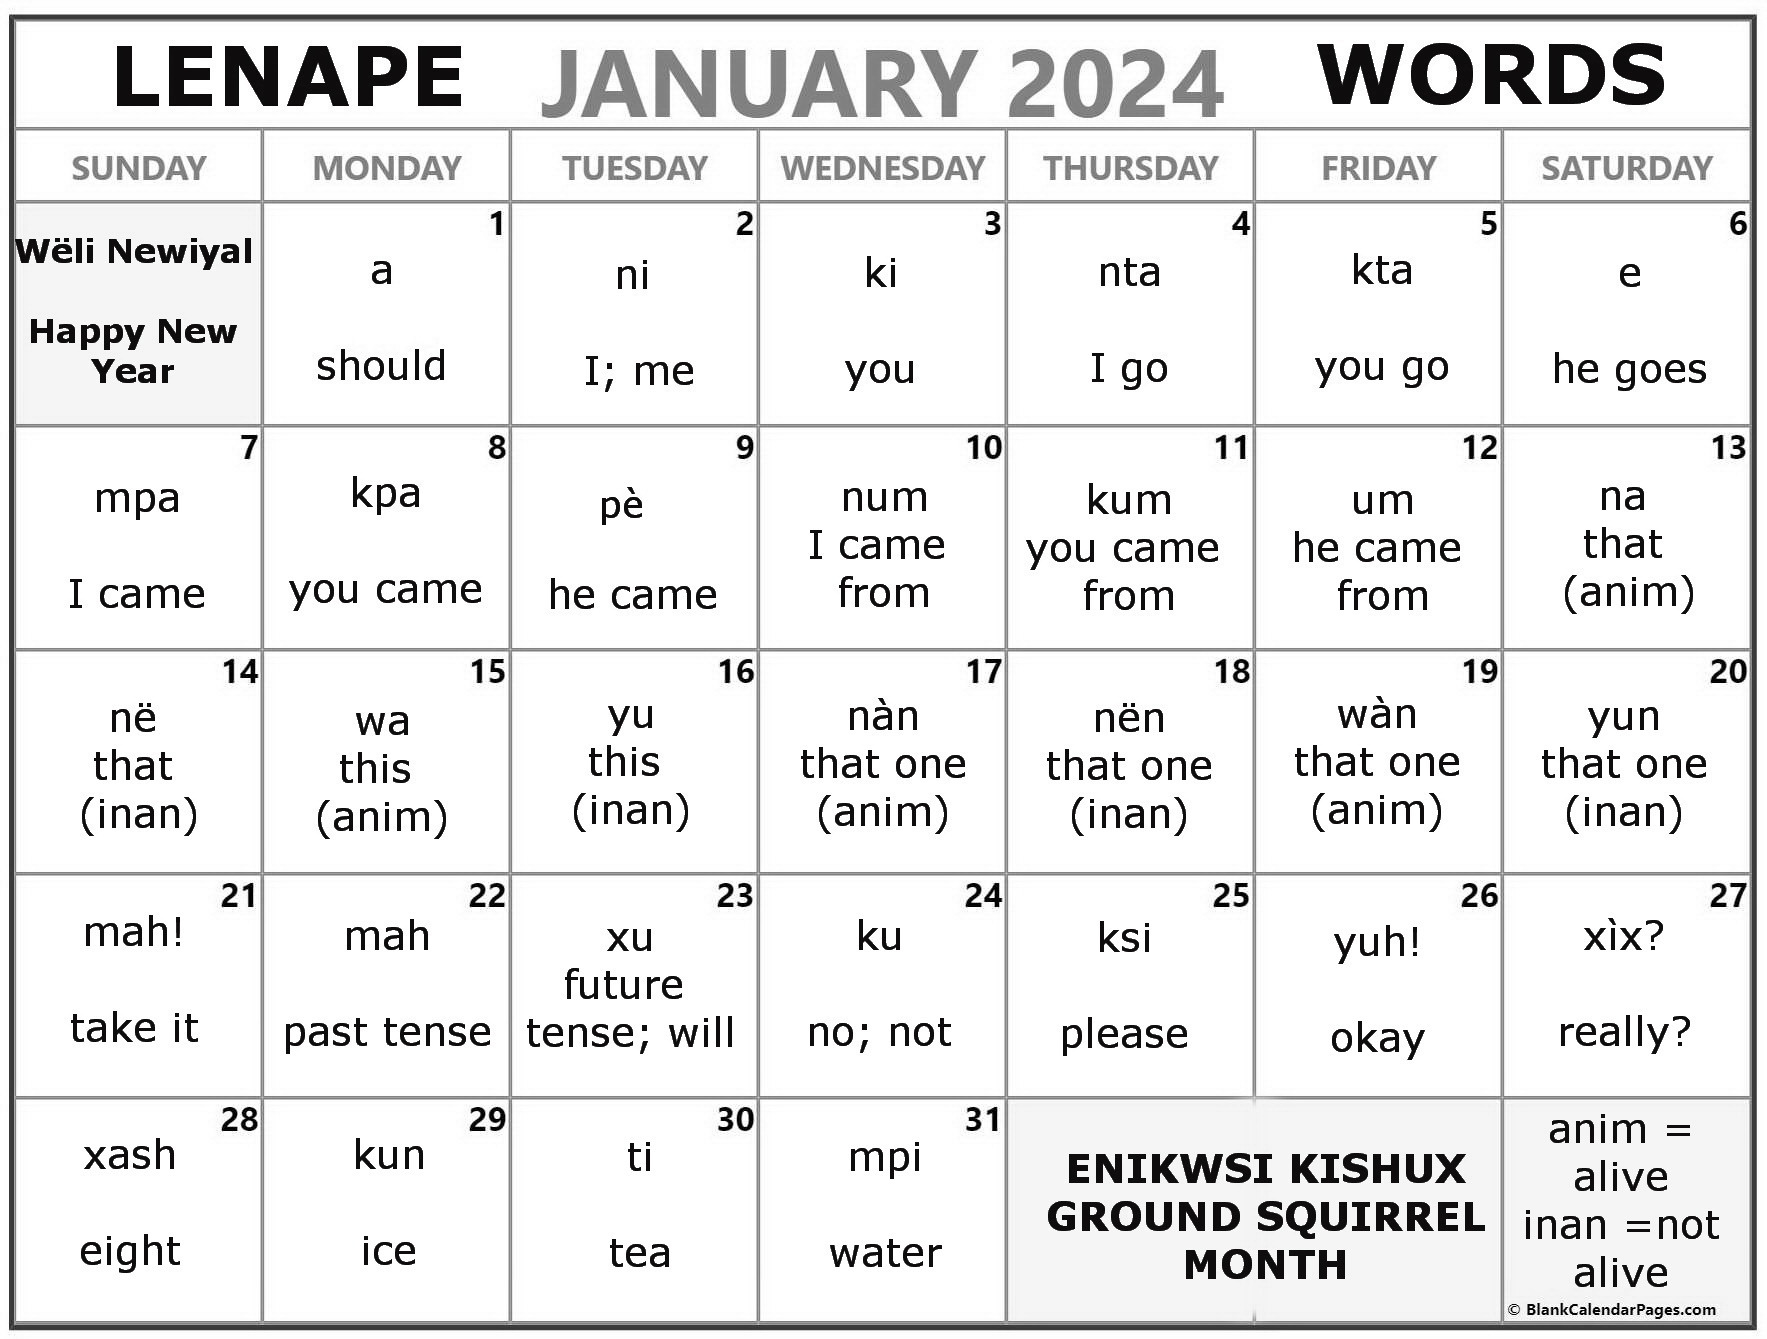 January 2024 Lenape Word-a-Day Calendar